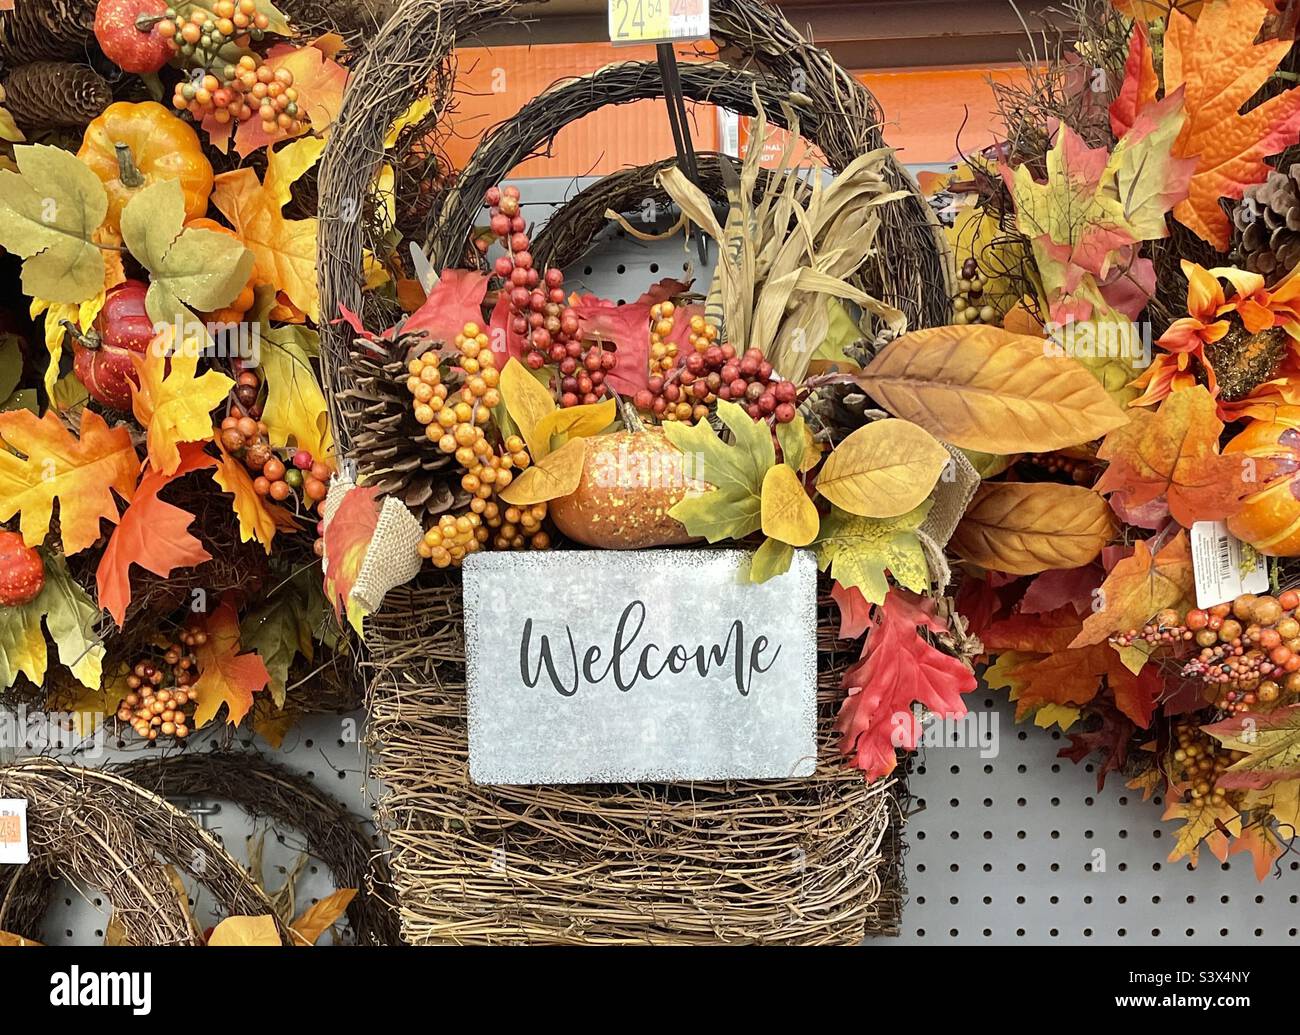 La stagione autunnale è ufficialmente qui, all'inizio di settembre, almeno nel settore retail. Un Walmart Supercenter ha navate dedicate alla stagione autunnale. Foto Stock